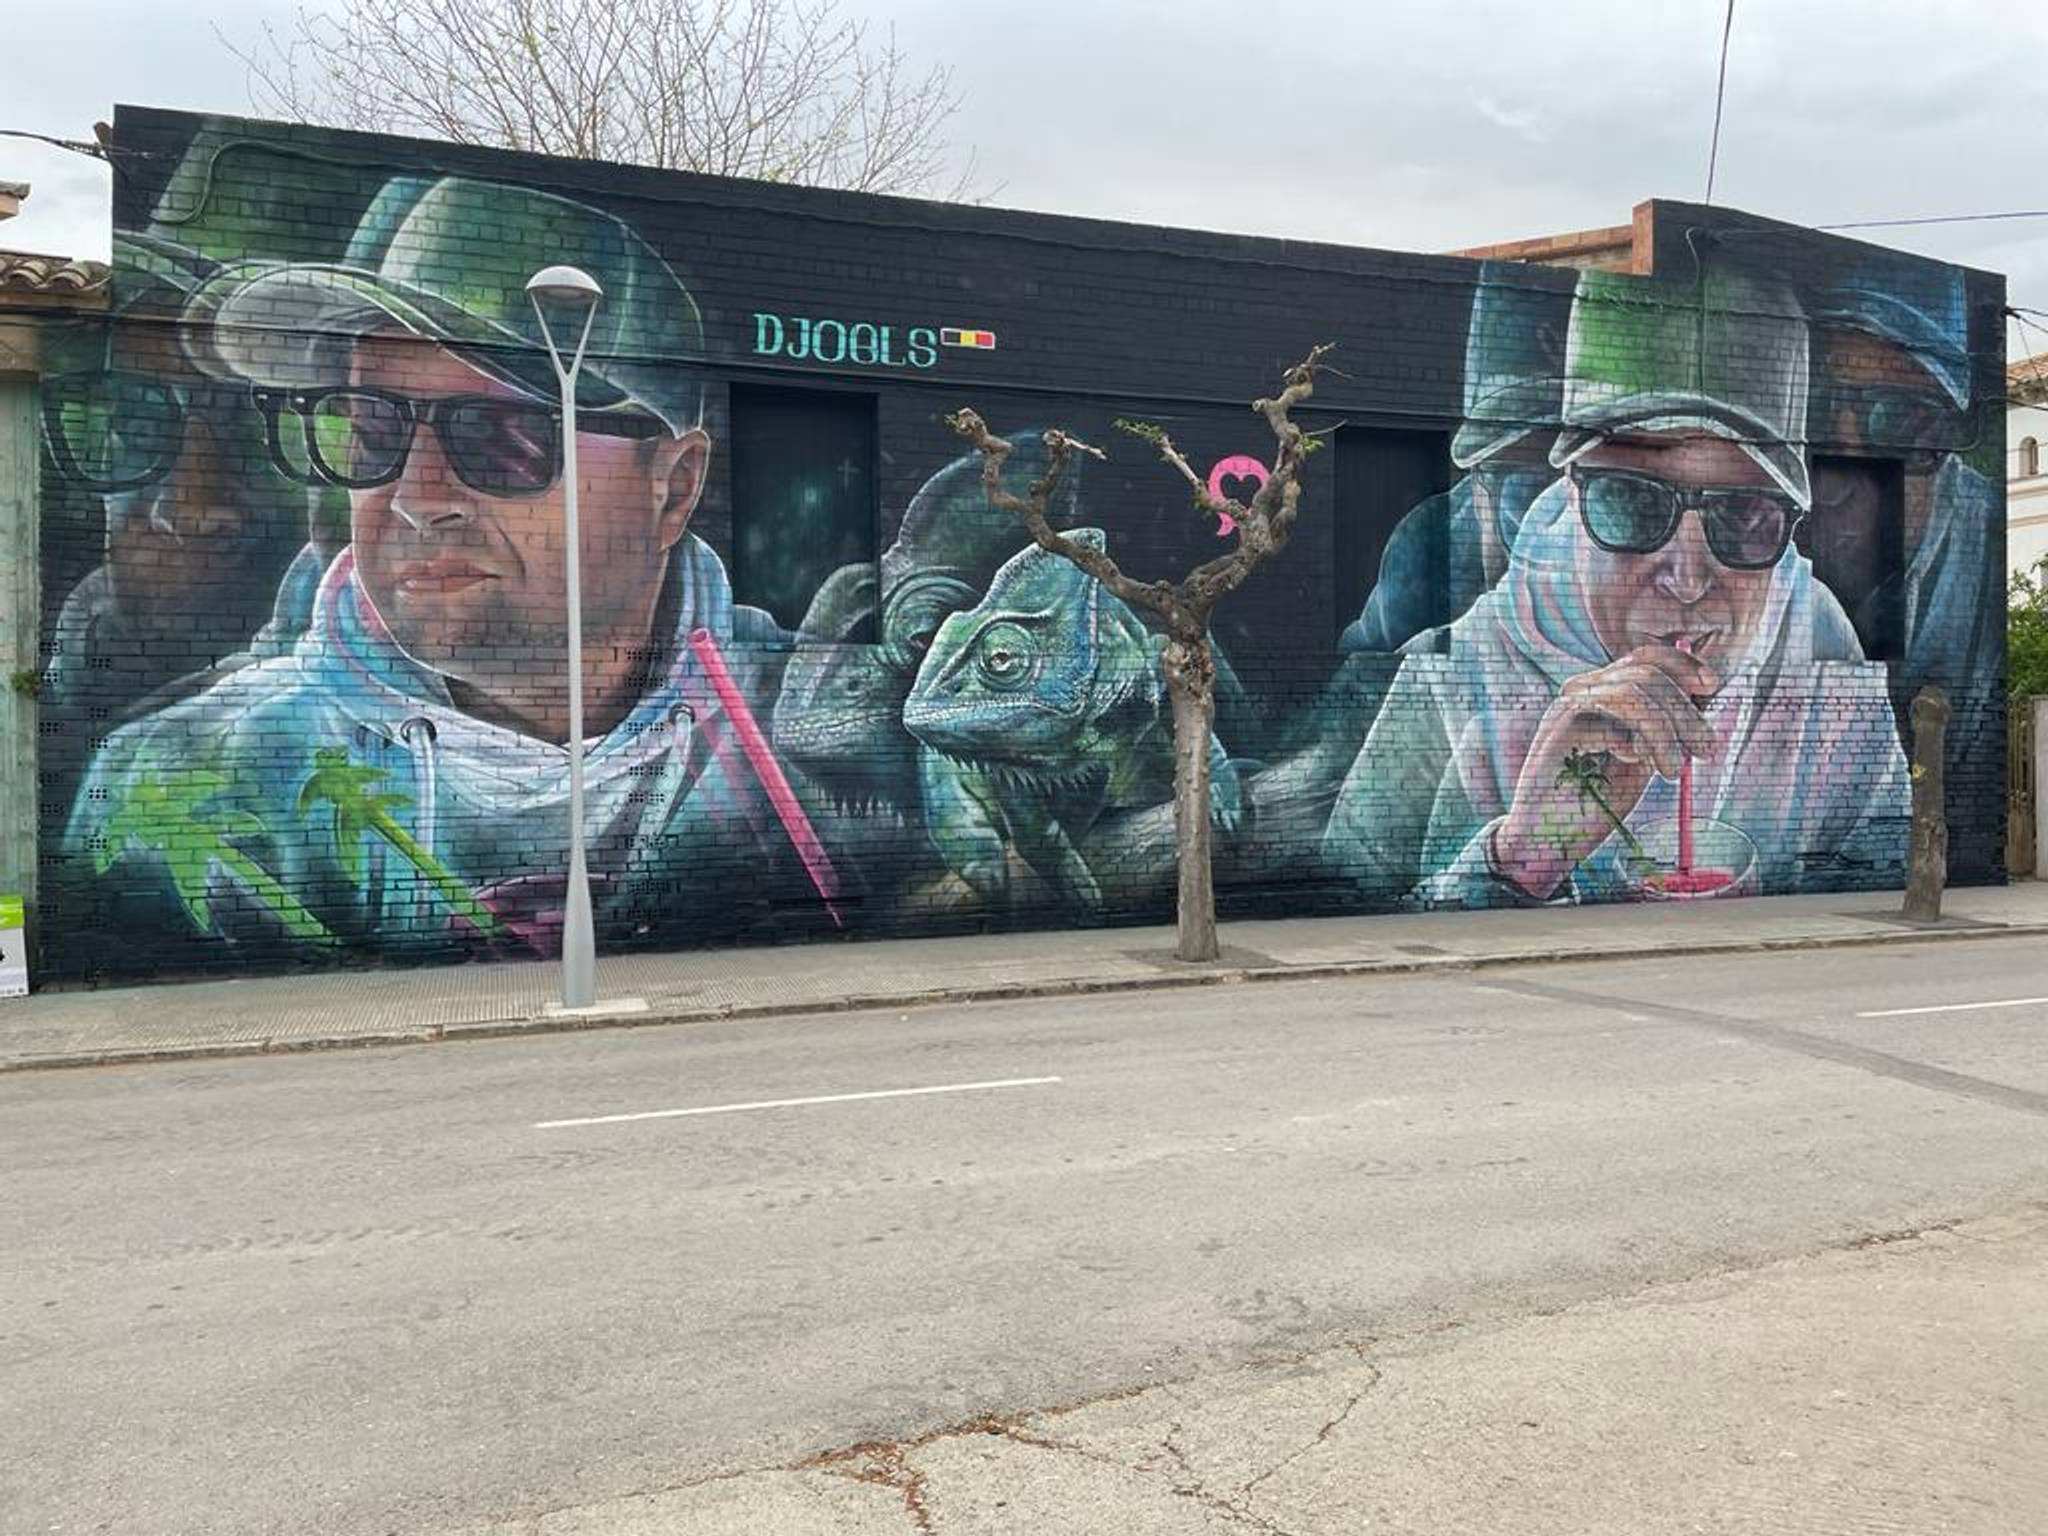 Mural by Belgian street artist Djoels in Penelles